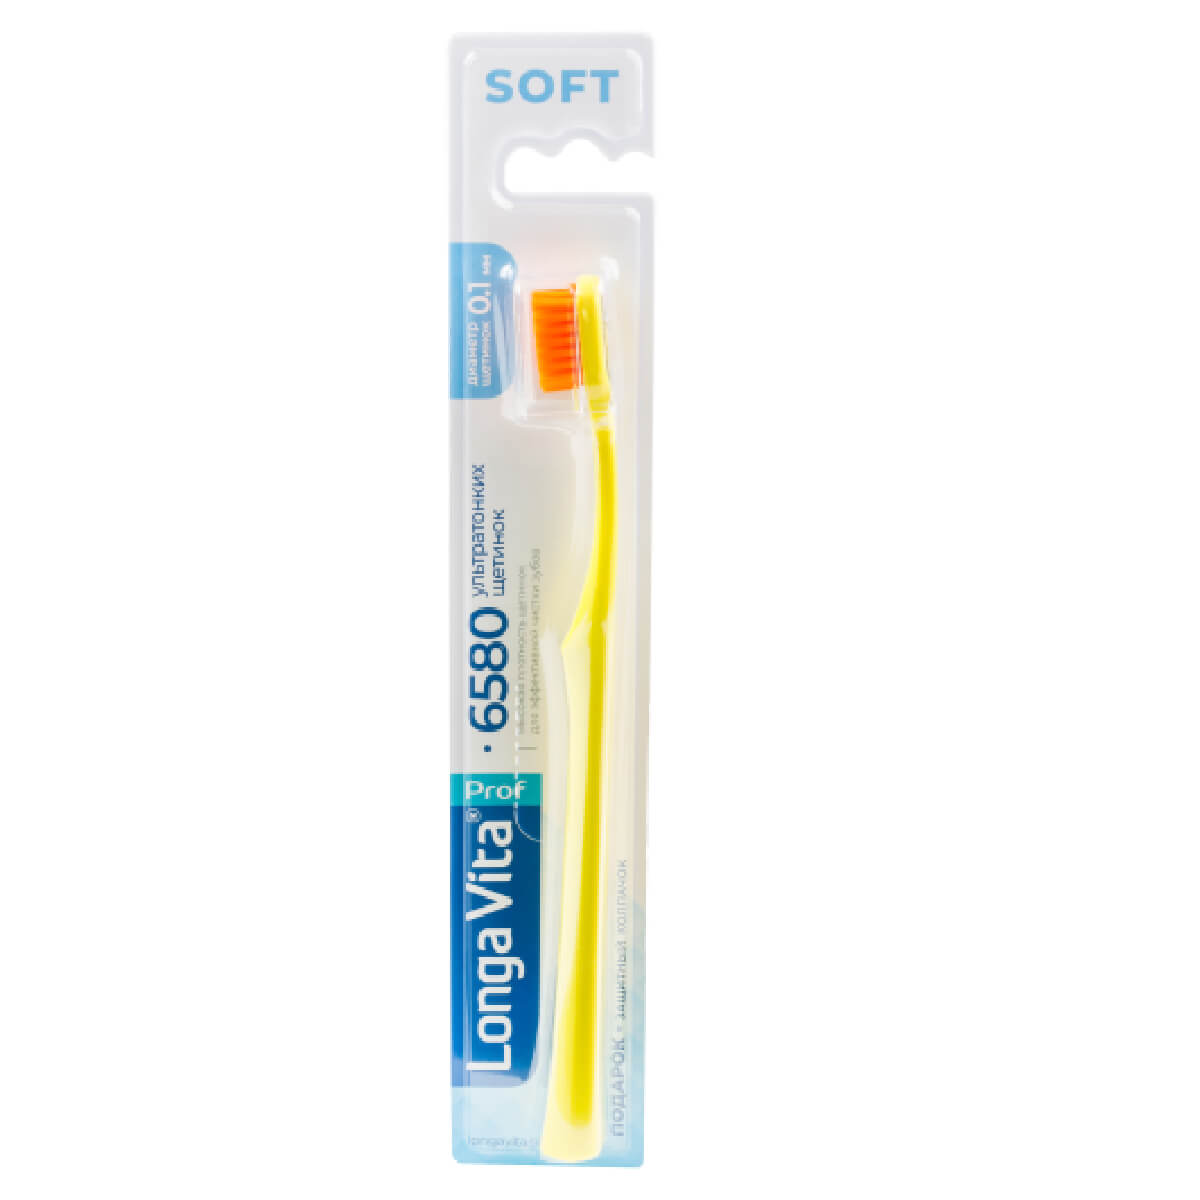 Зубная щетка LONGA VITA 6580 щетинок ultrasoft d 0,10 мм жёлтая, 1 шт pl зубная щетка с резиновой щетиной мягкая 2 шт